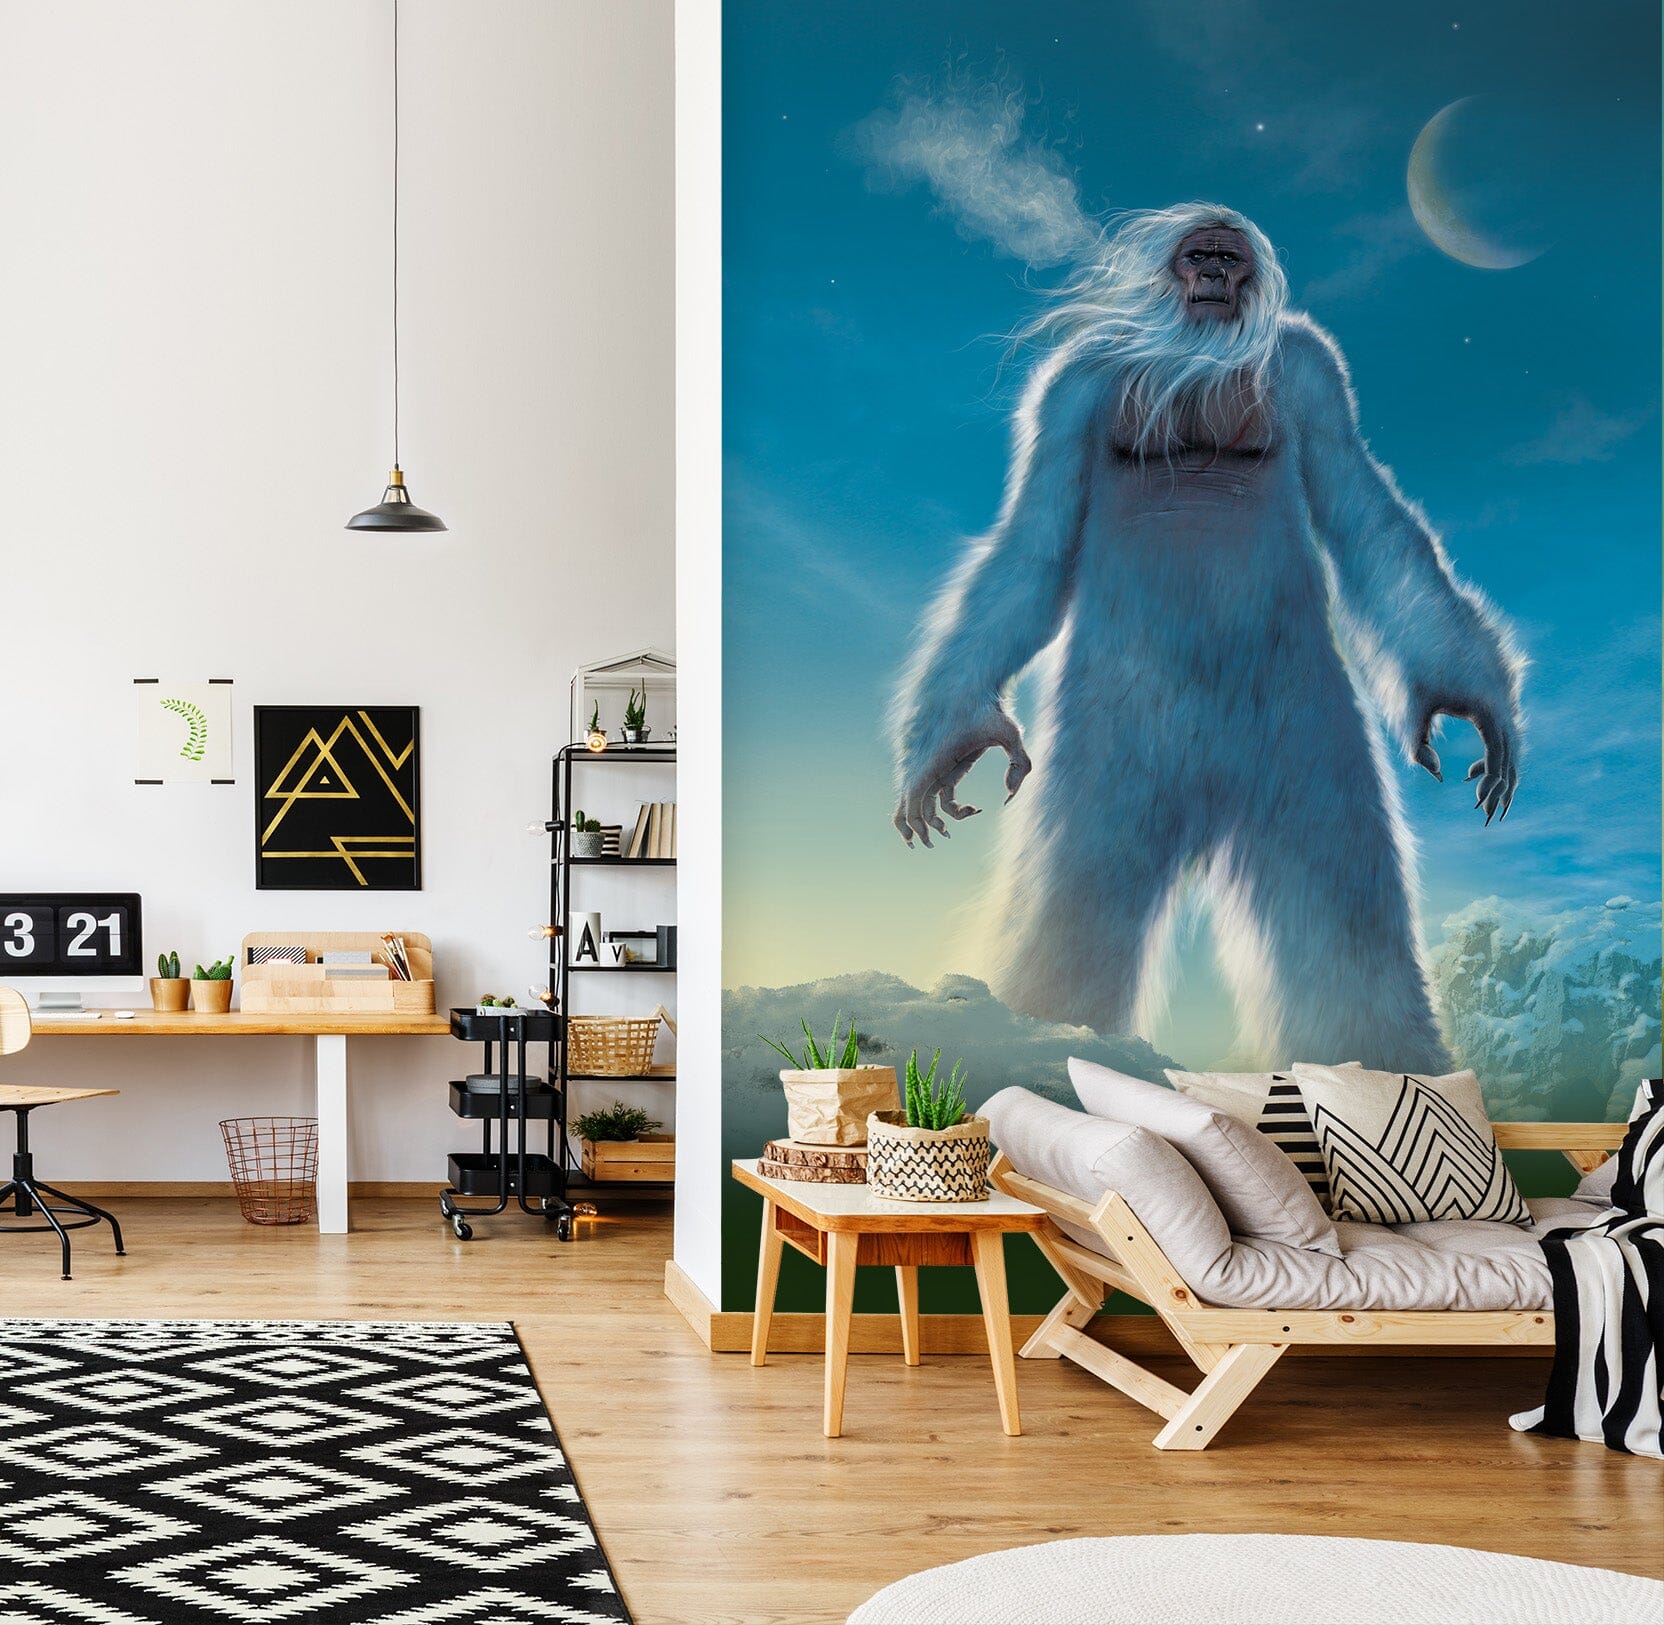 3D Giant Orangutan 1574 Wall Murals Exclusive Designer Vincent Wallpaper AJ Wallpaper 2 